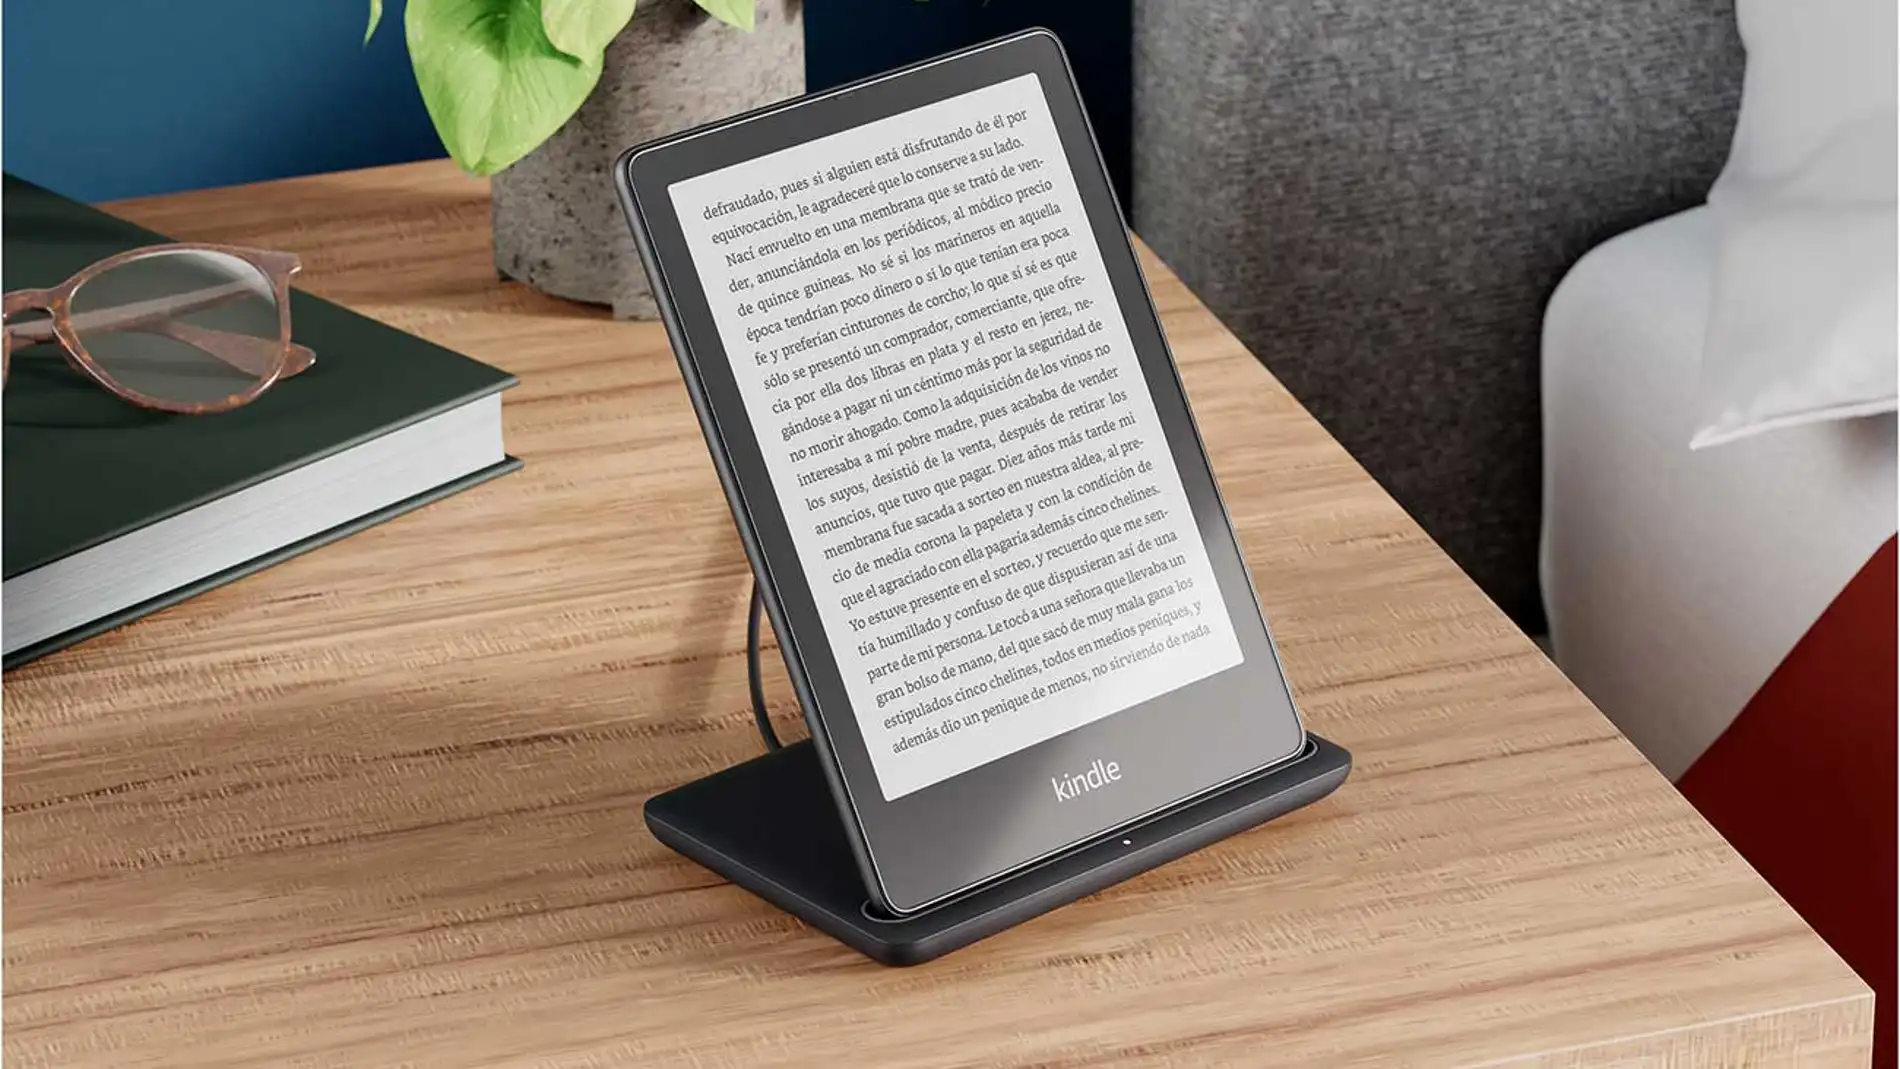 Amazon lanza sus nuevos Kindle Paperwhite con pantalla de 6,8 pulgadas